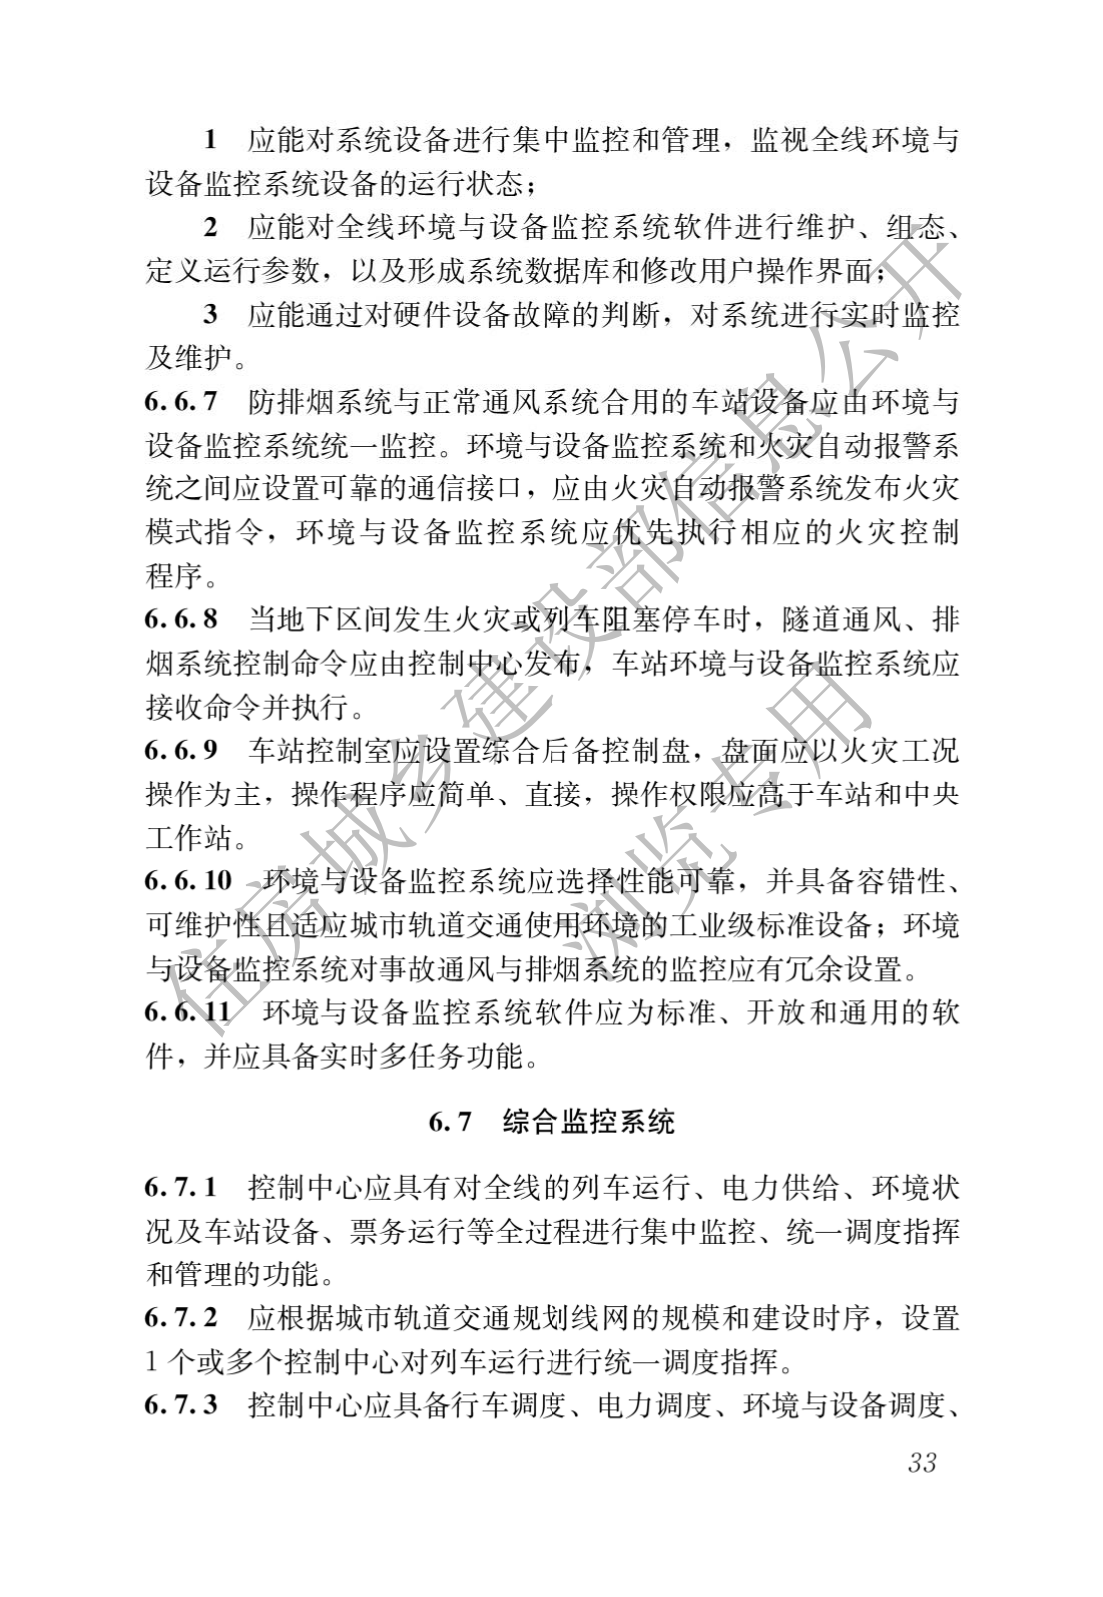 住房和城鄉建設部關于發布國家标準 《城市軌道交通工(gōng)程項目規範》的公告(圖37)